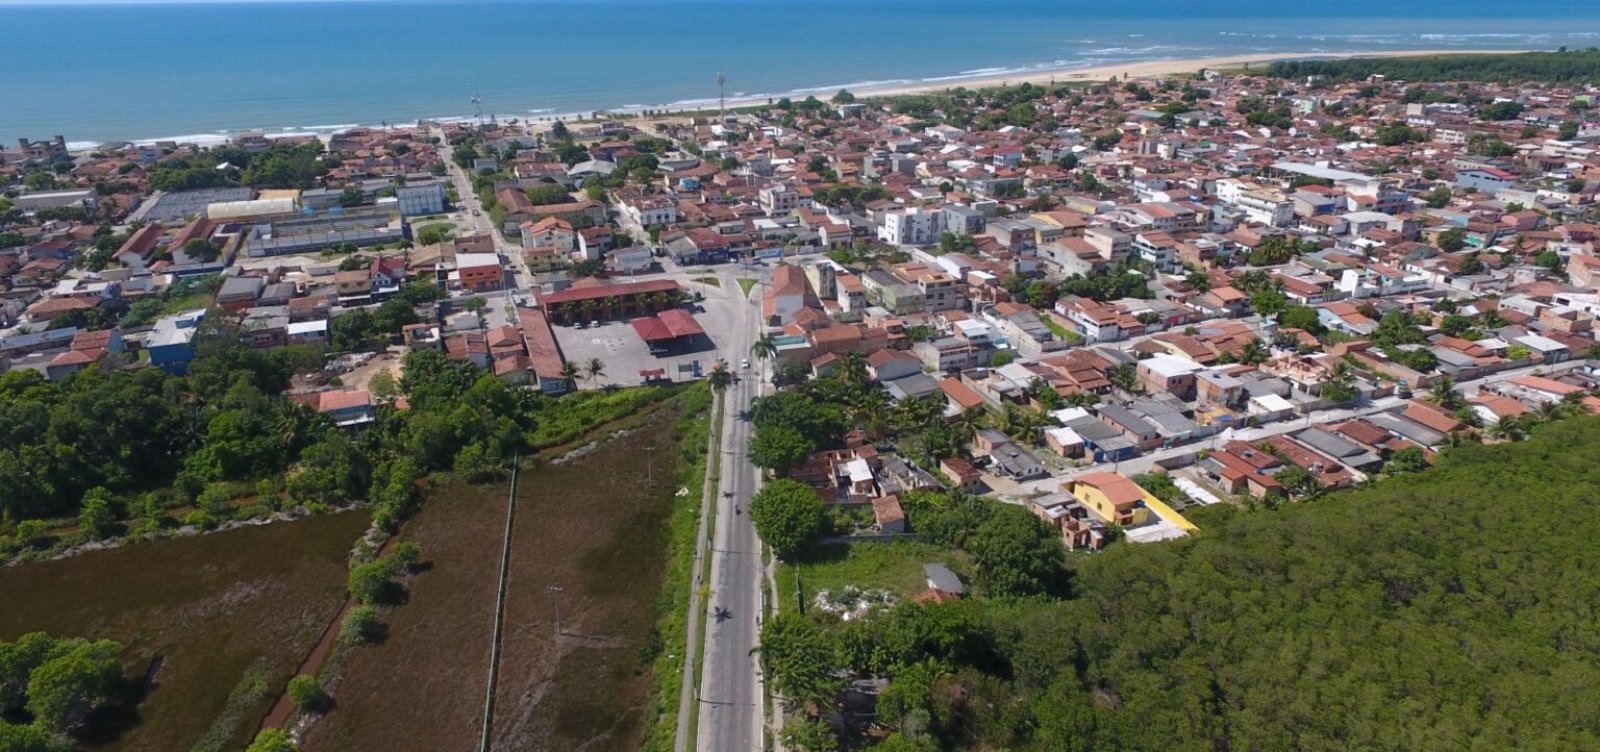 Cidade do interior da Bahia vira alvo da Justiça por descumprir recomendação do MP